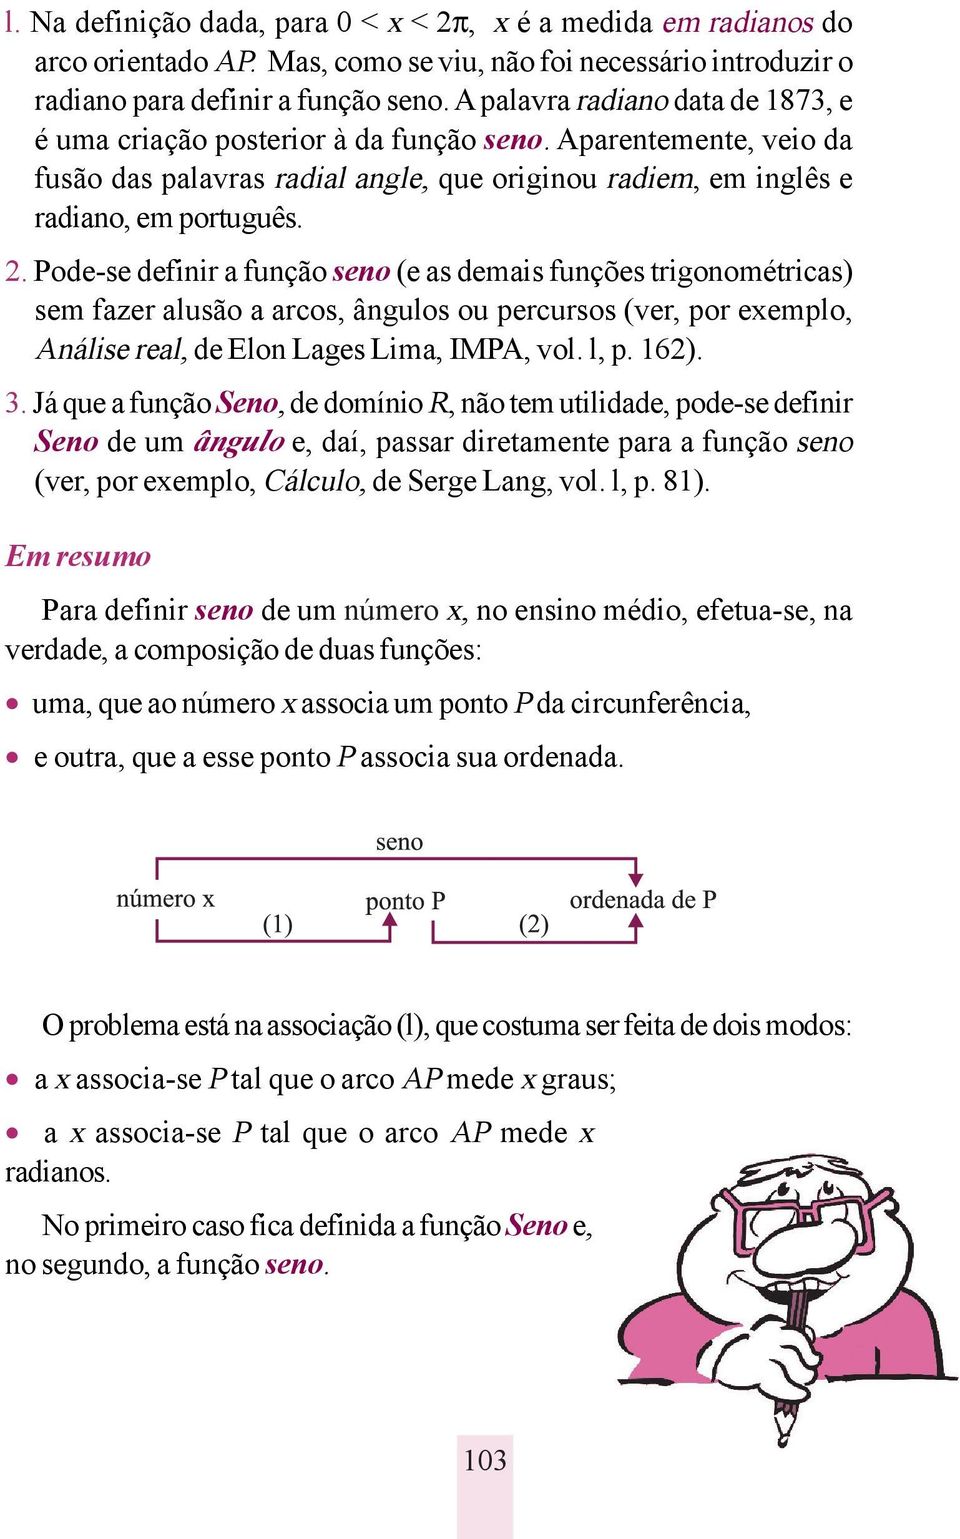 Pode-se definir a função seno (e as demais funções trigonométricas) sem fazer alusão a arcos, ângulos ou percursos (ver, por exemplo, Análise real, de Elon Lages Lima, IMPA, vol. l, p. 162). 3.